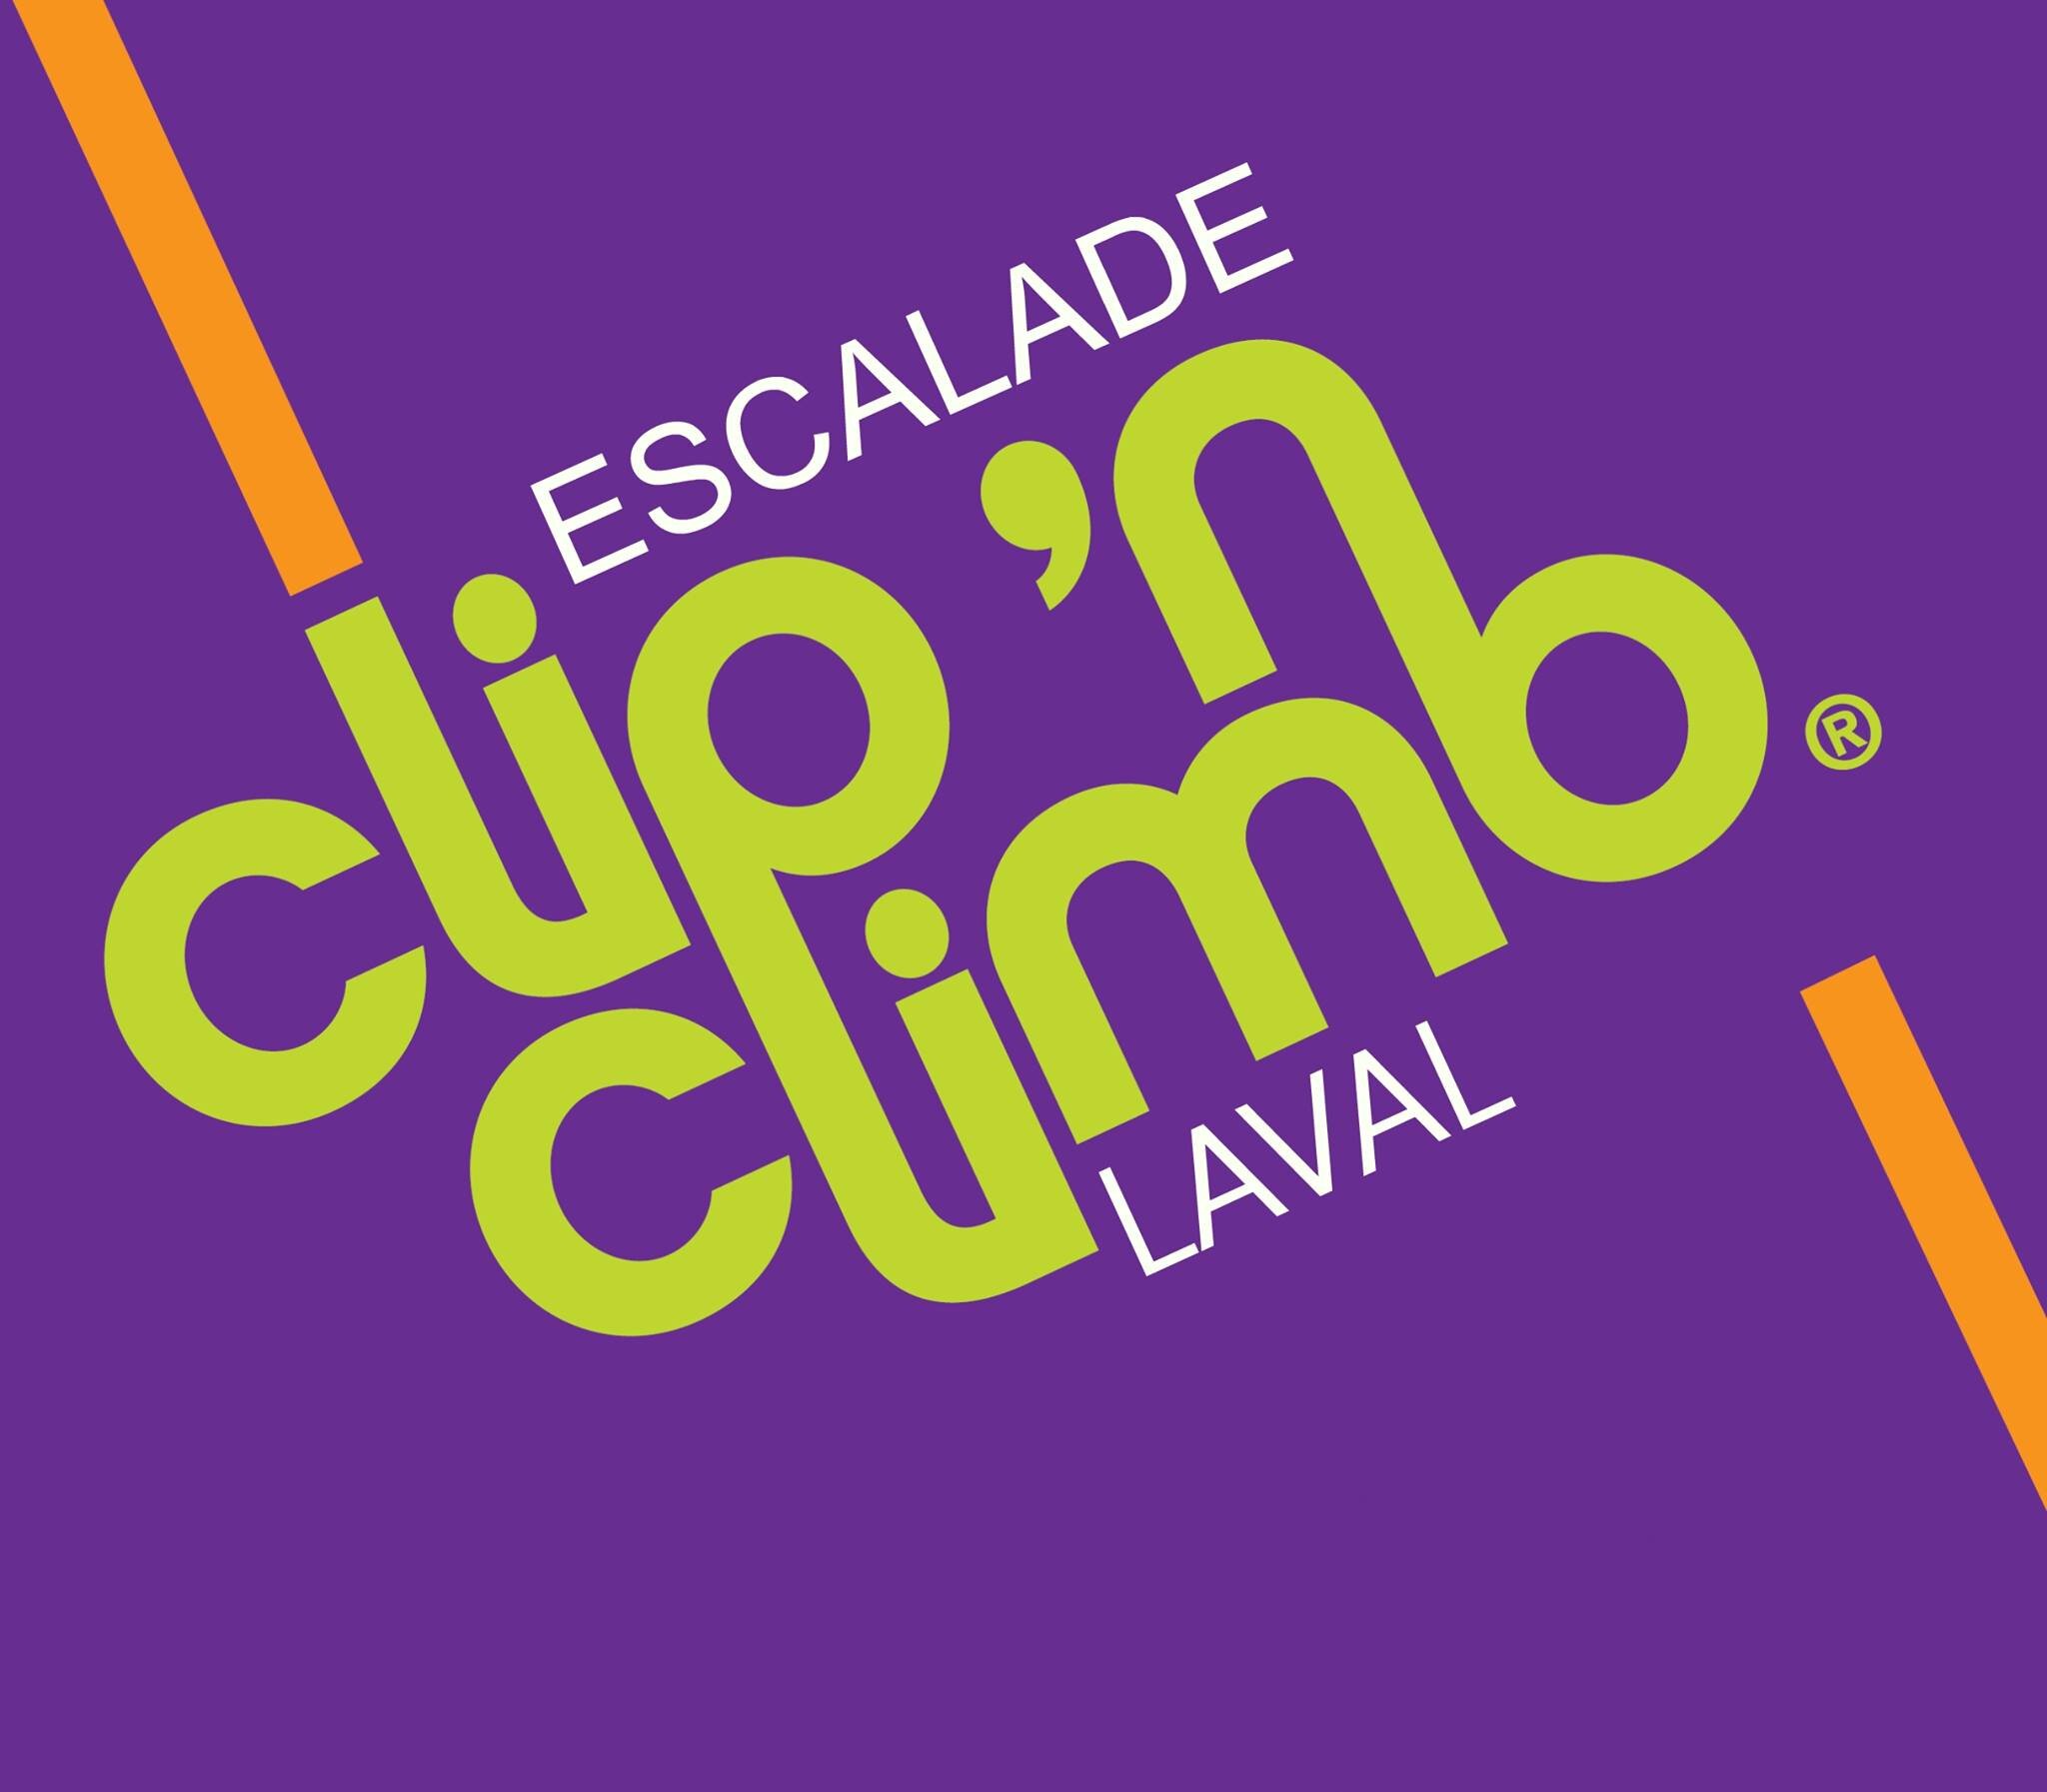 Escalade #ClipLaval est une activité impressionnante à la portée de tous, avec comme mot d'ordre: L'action ! #Clipnclimb #Escalade #Climbing